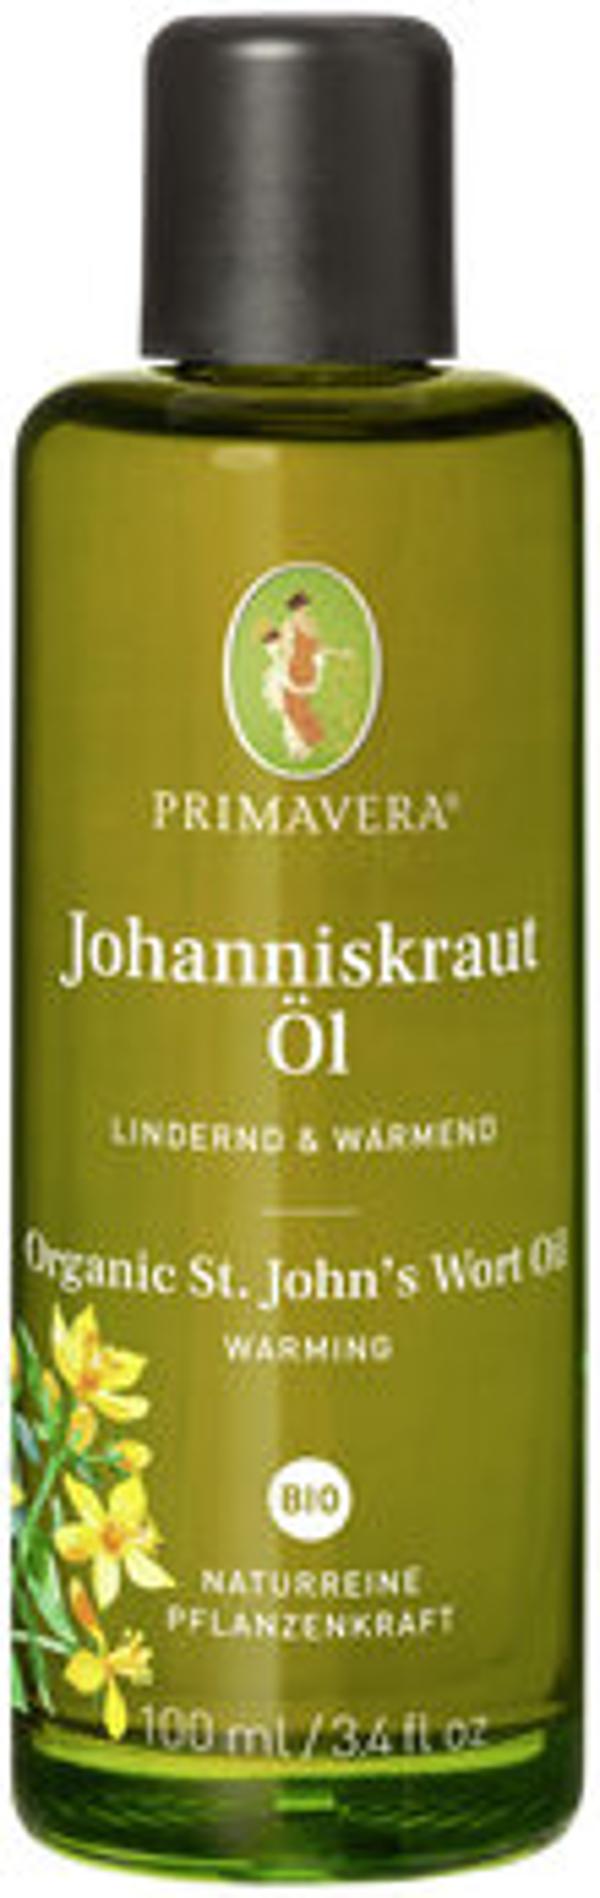 Produktfoto zu Johanniskrautöl